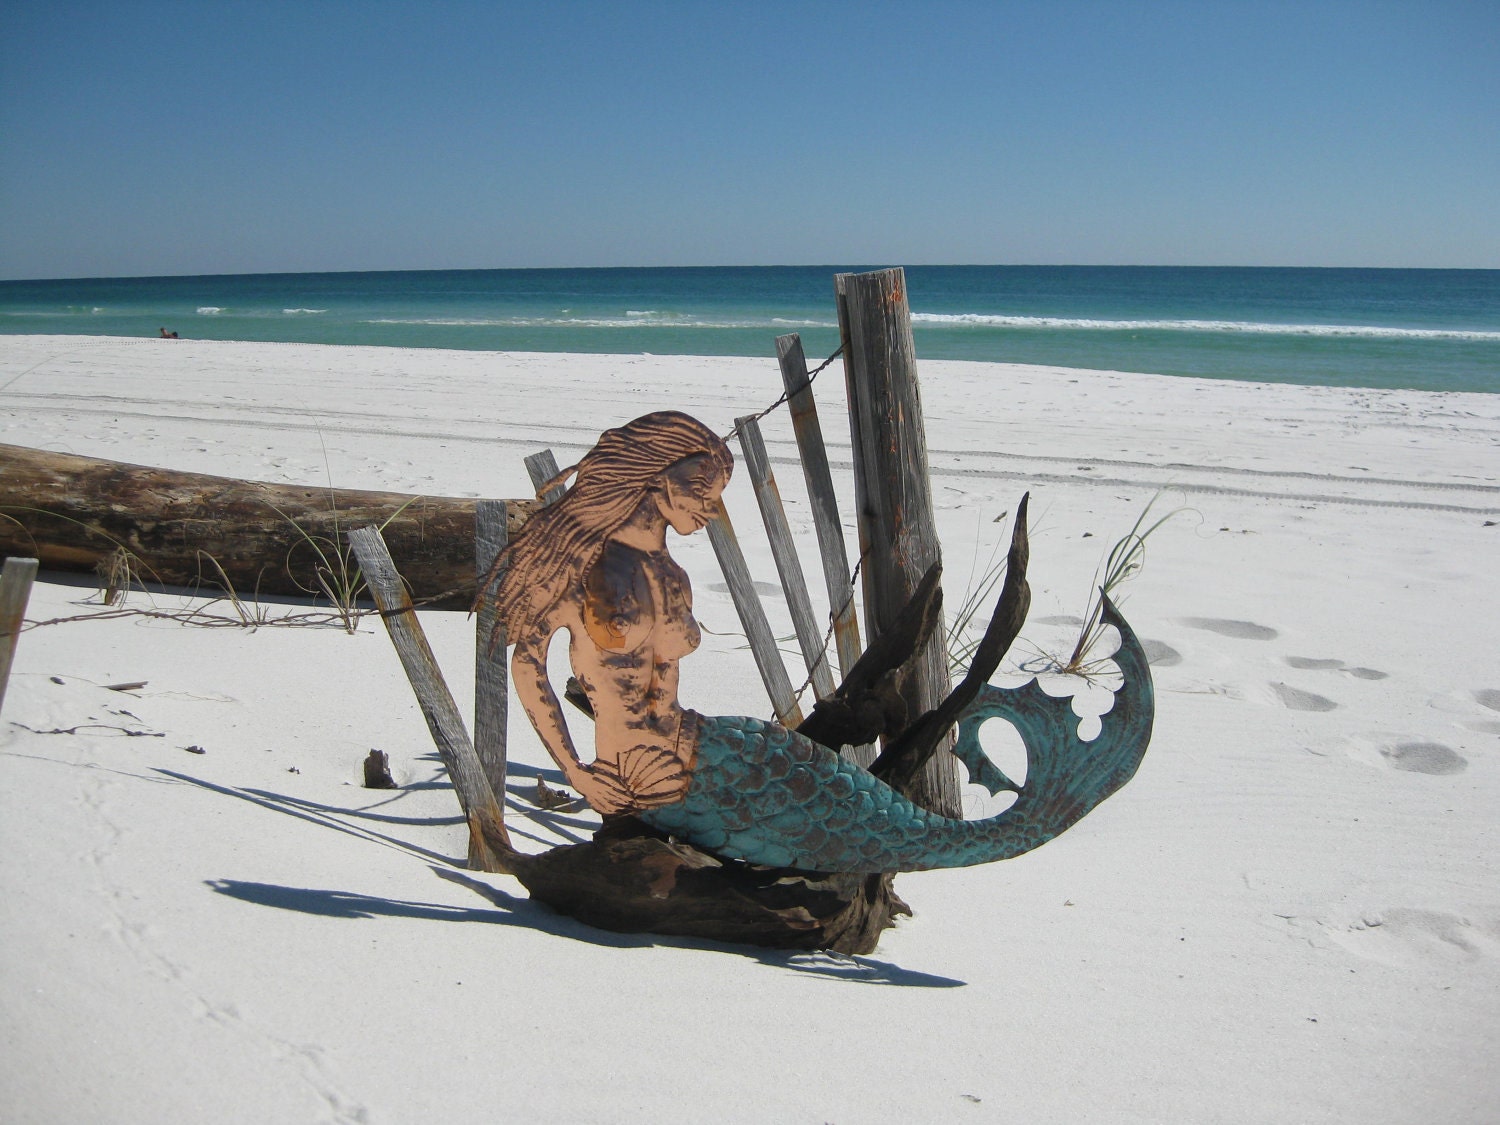 Mermaid on driftwood - oldsaltscopperdesign